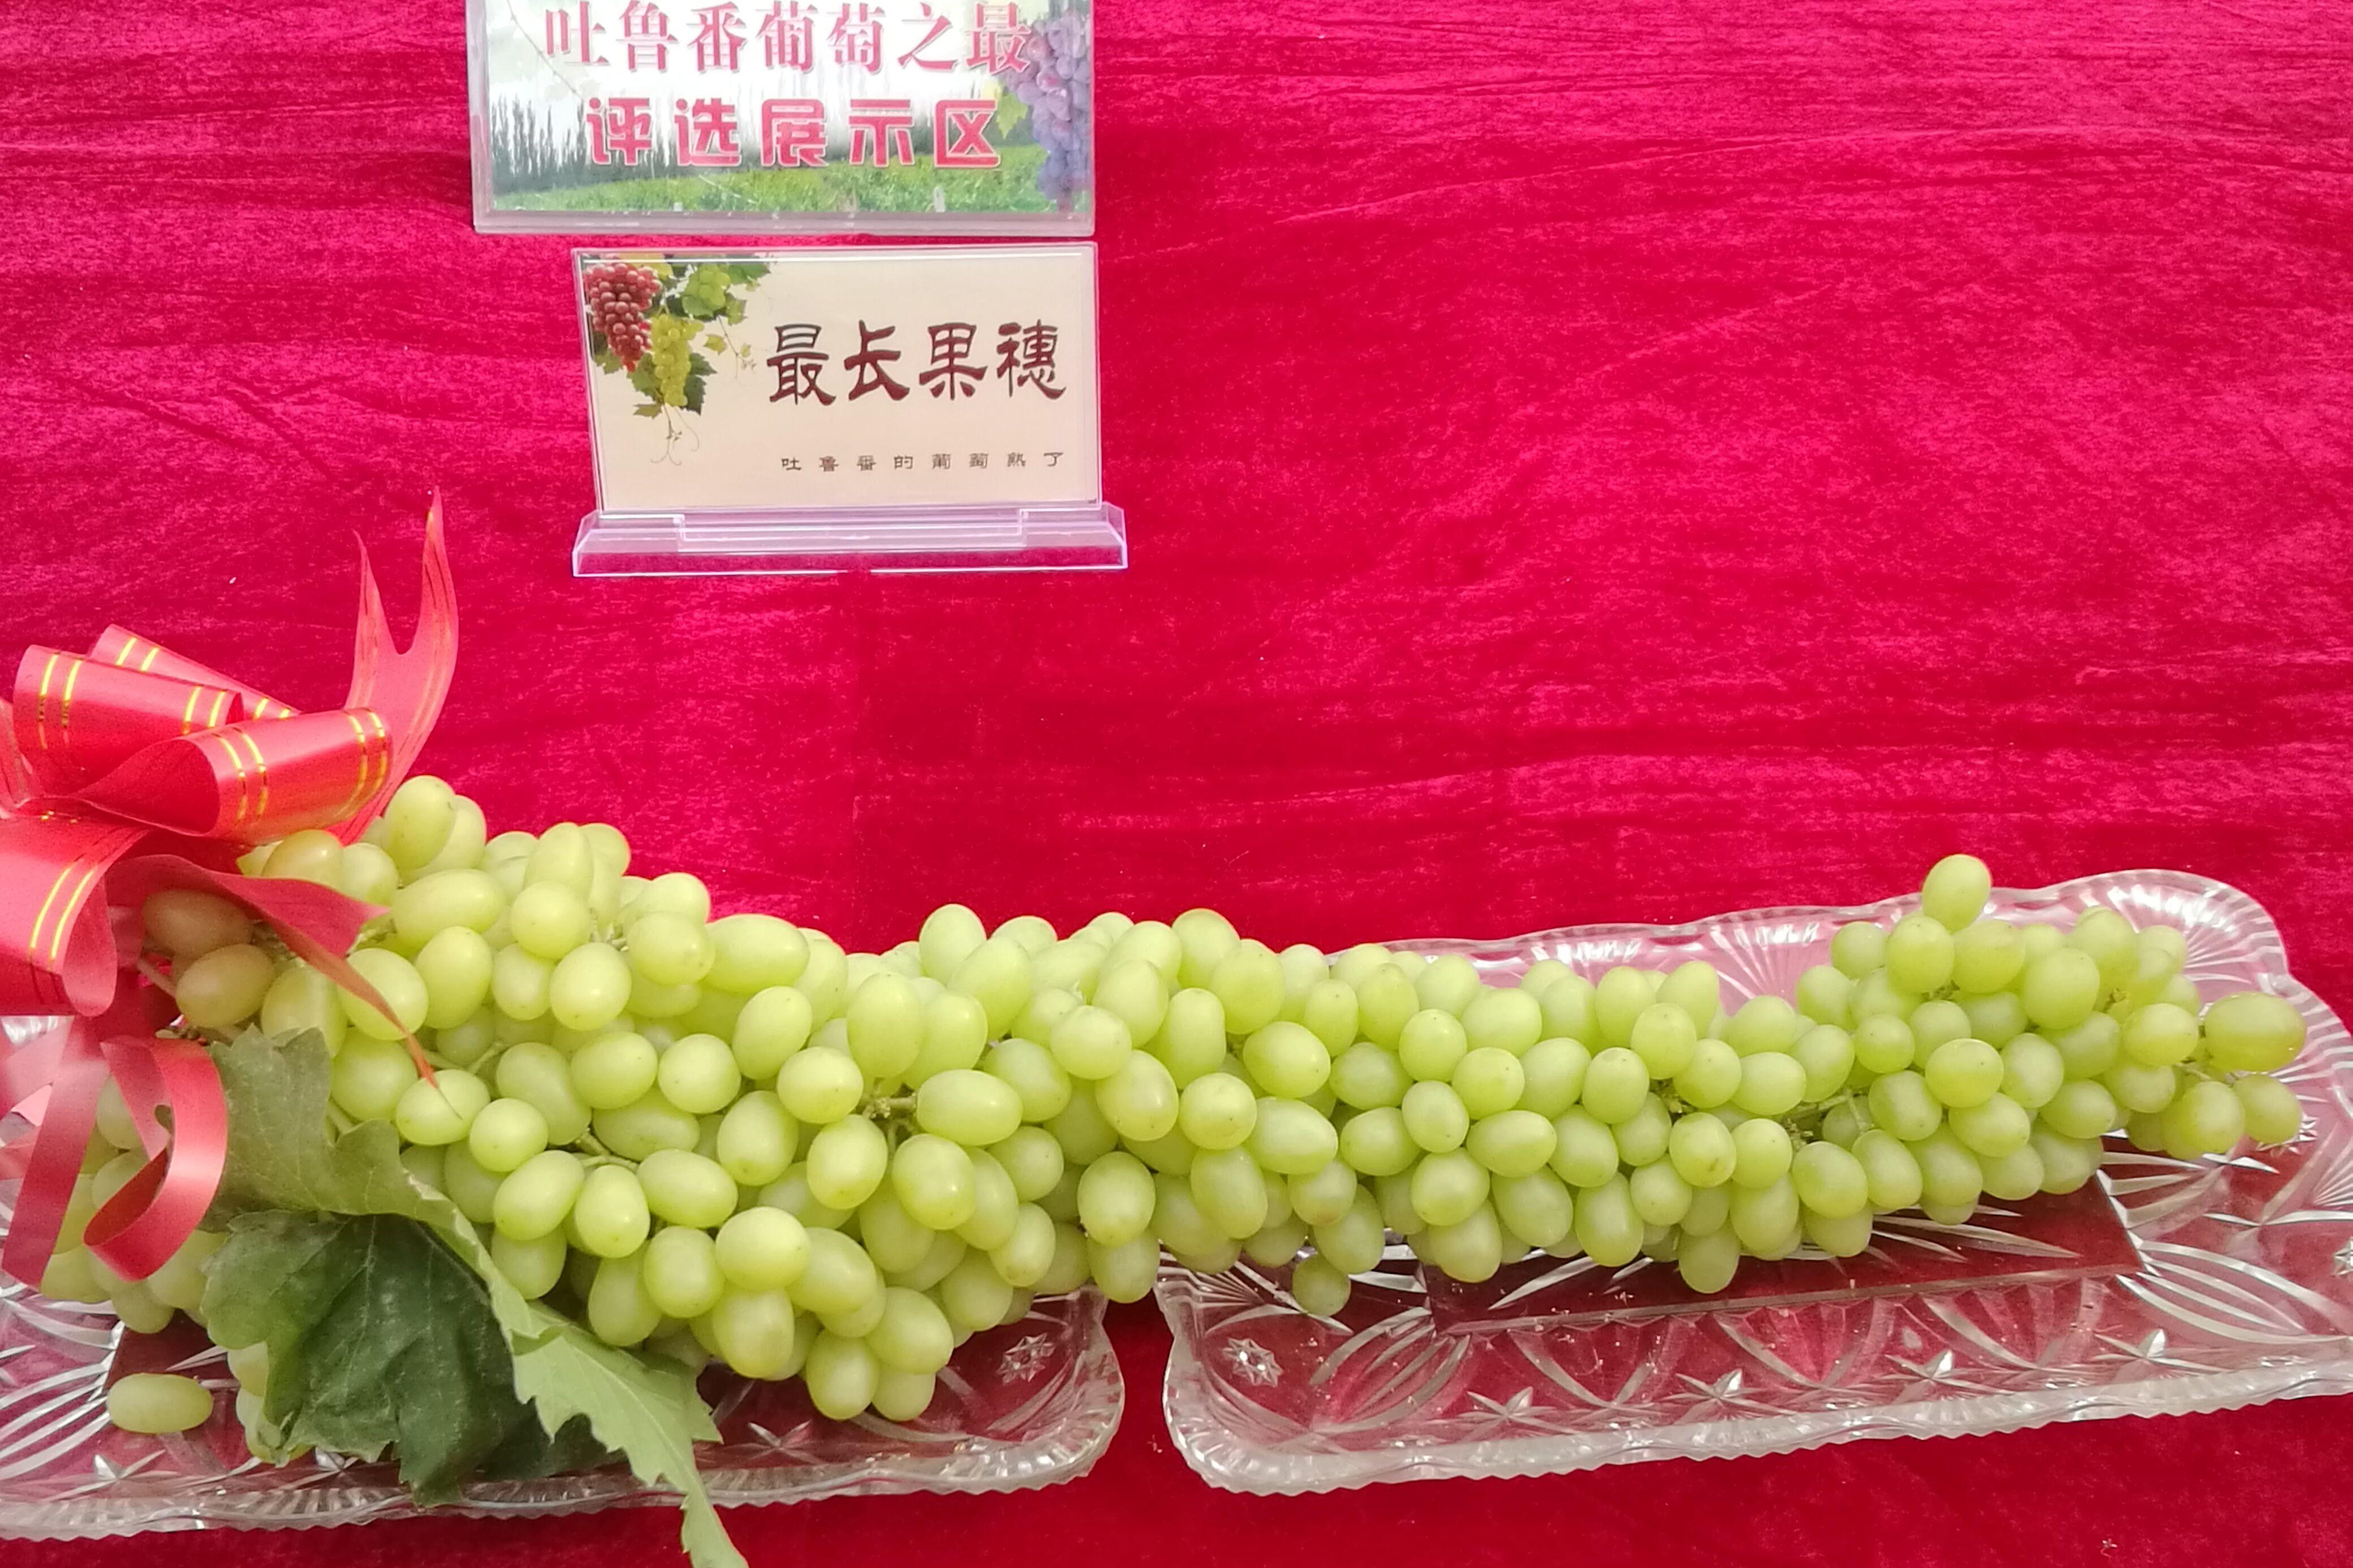 新疆鲜食葡萄种植产地品种分析 | 国际果蔬报道